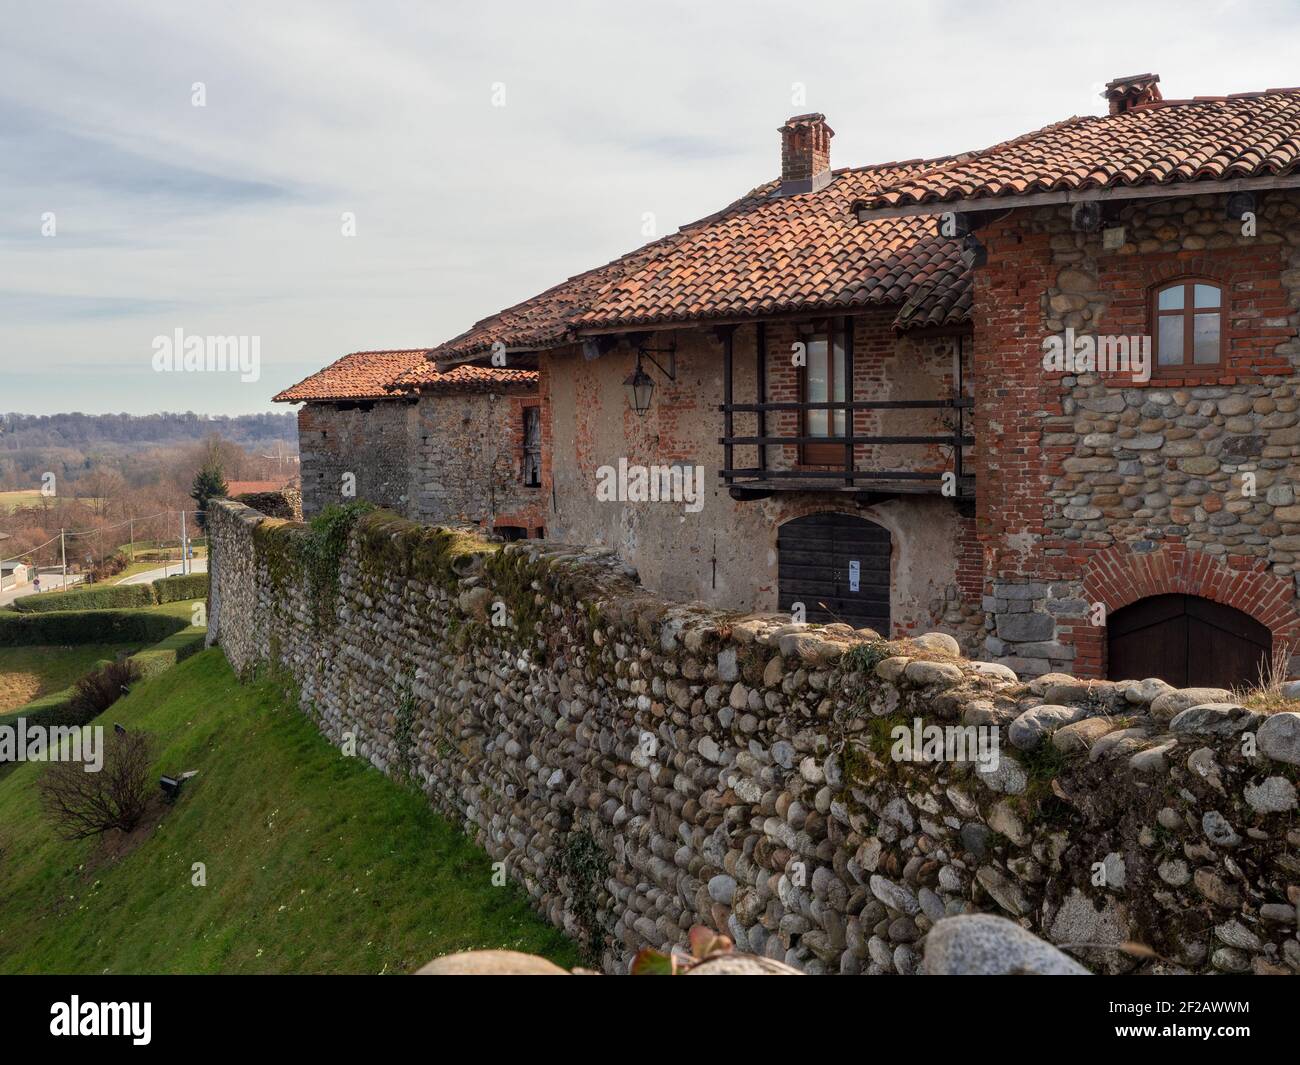 Maisons entourées de murs fortifiés du village médiéval .Ricetto di Candelo, Piémont, Italie. Banque D'Images